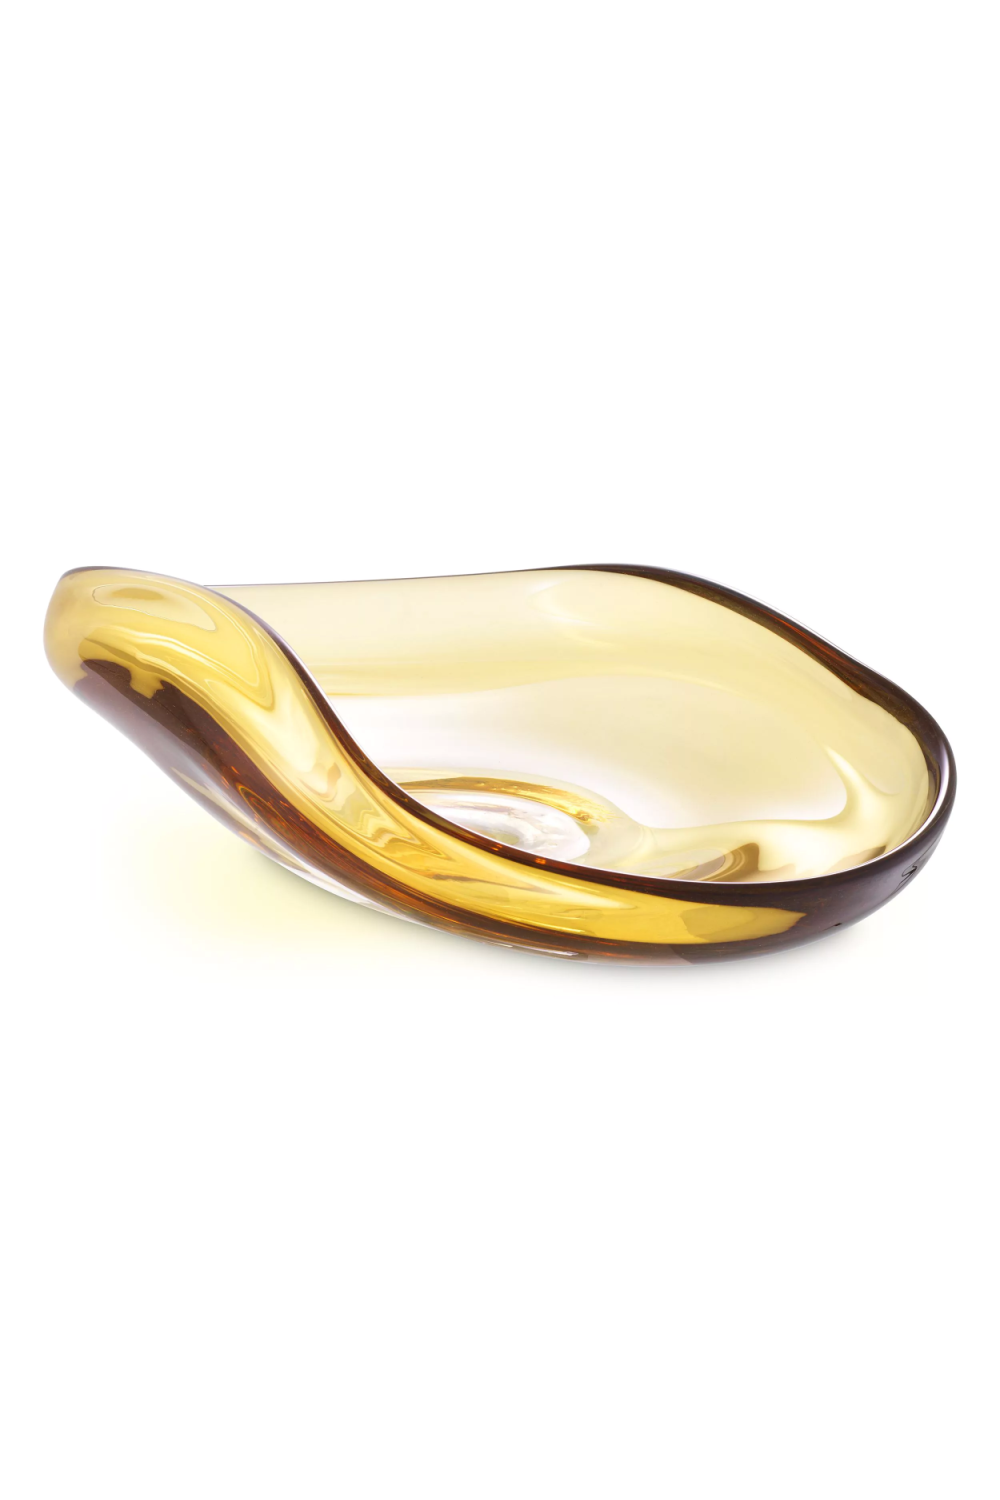 Contemporary Glass Bowl | Eichholtz Athol | OROA.com